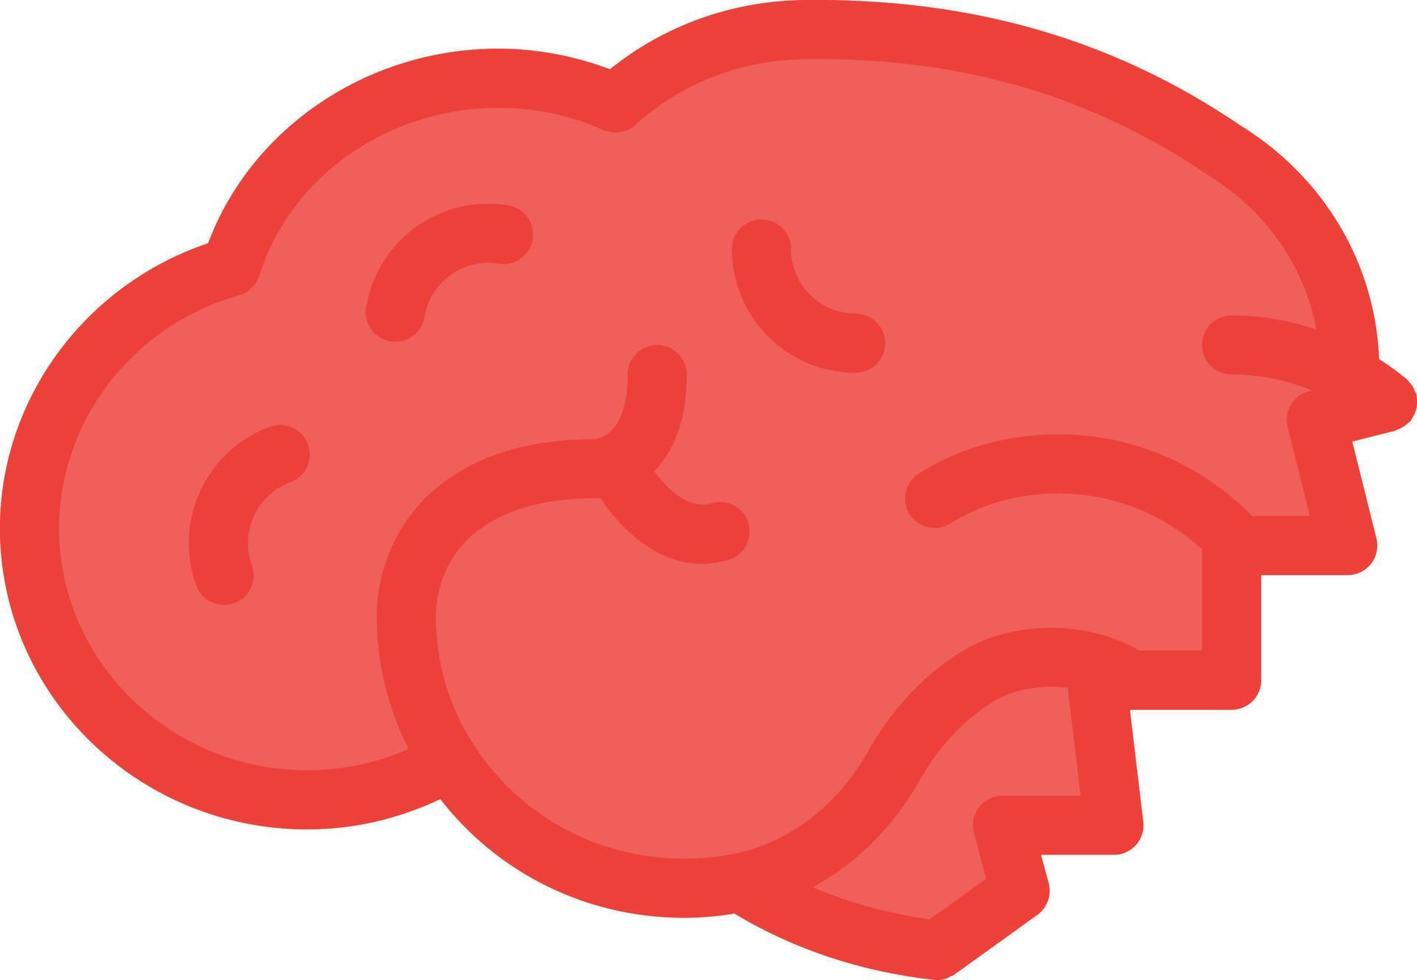 illustrazione vettoriale del cervello su uno sfondo. simboli di qualità premium. icone vettoriali per il concetto e la progettazione grafica.